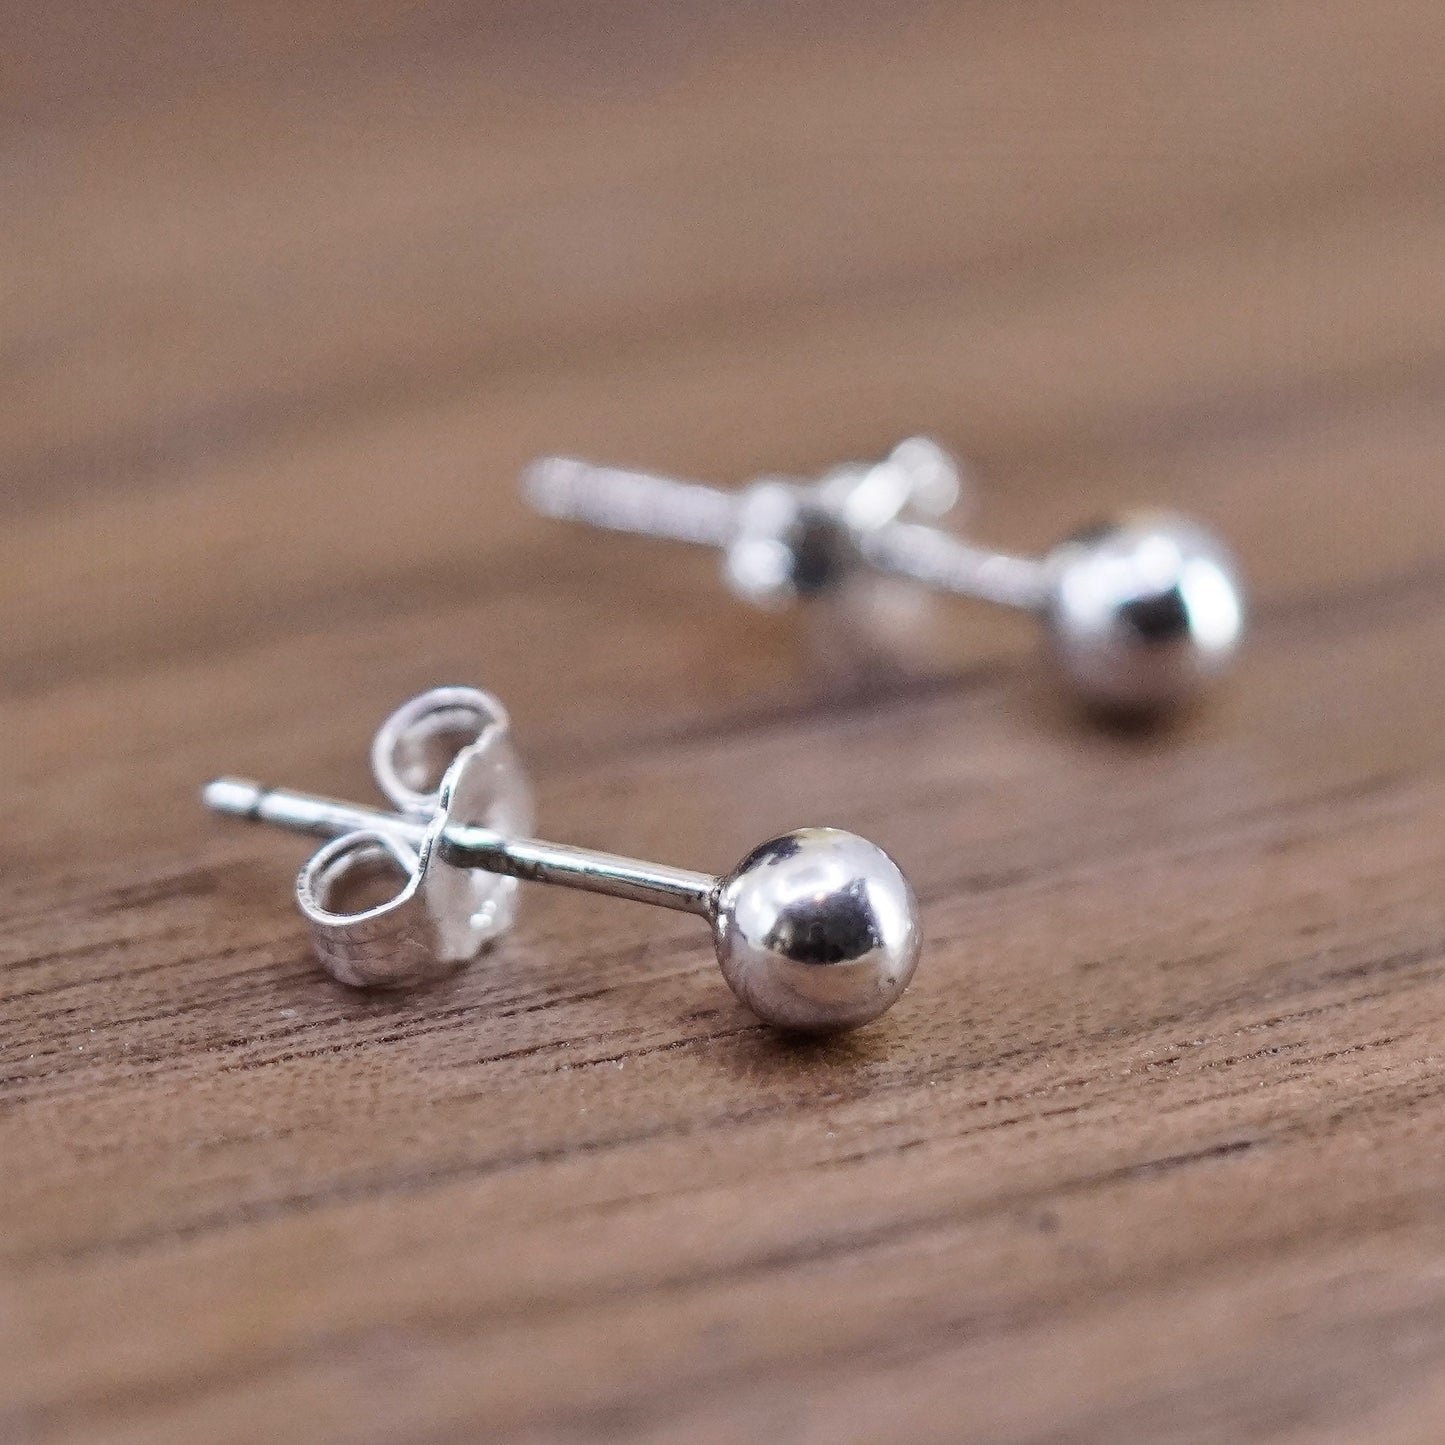 3mm, Vintage Sterling silver beads studs, 925 earrings